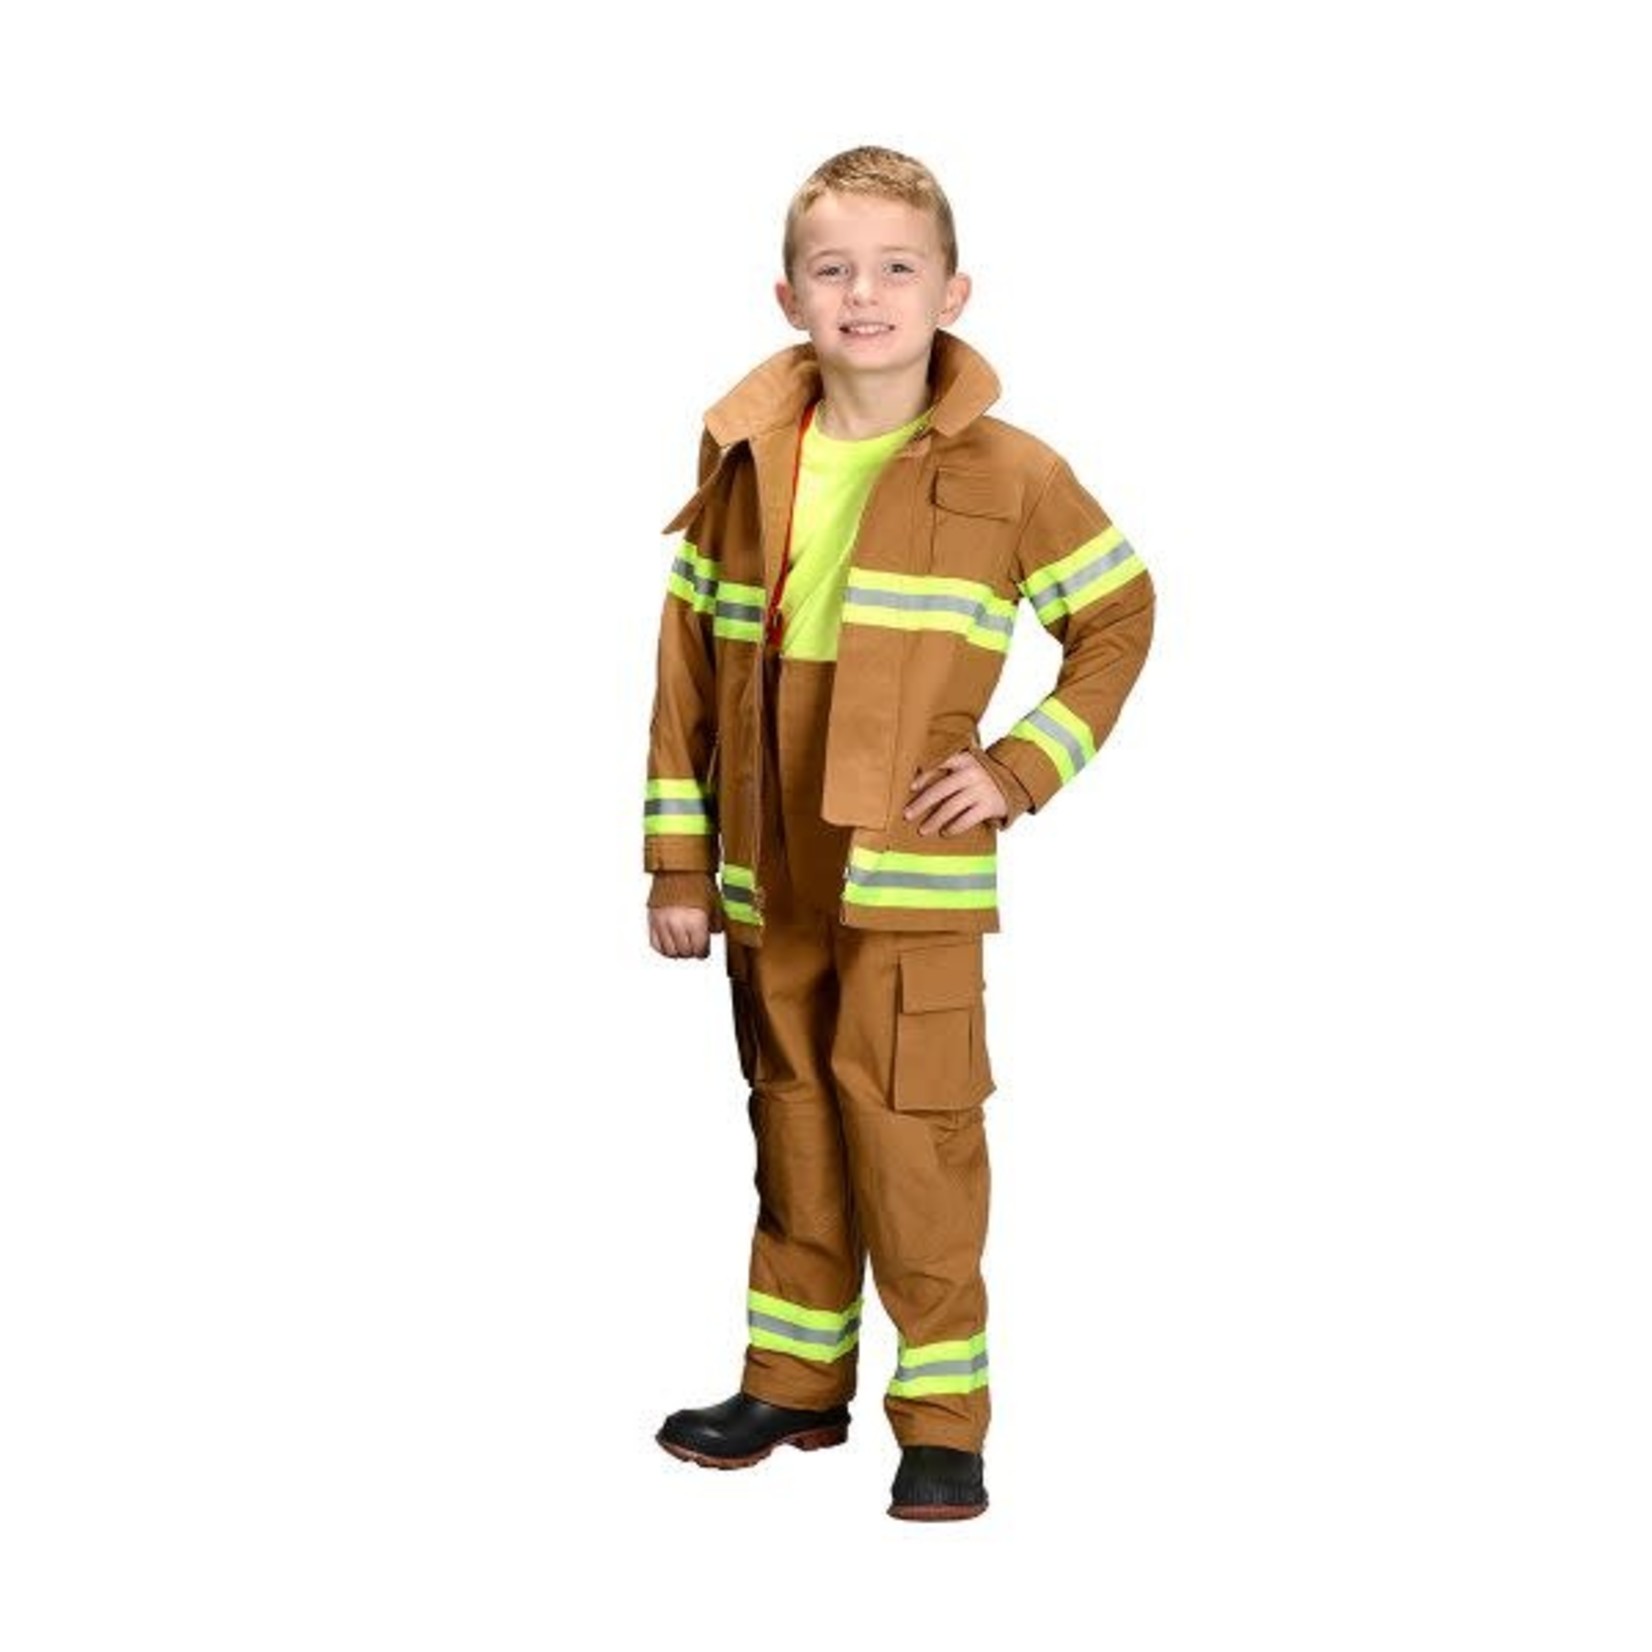 Jr. Firefighter Suit - Size 6-8